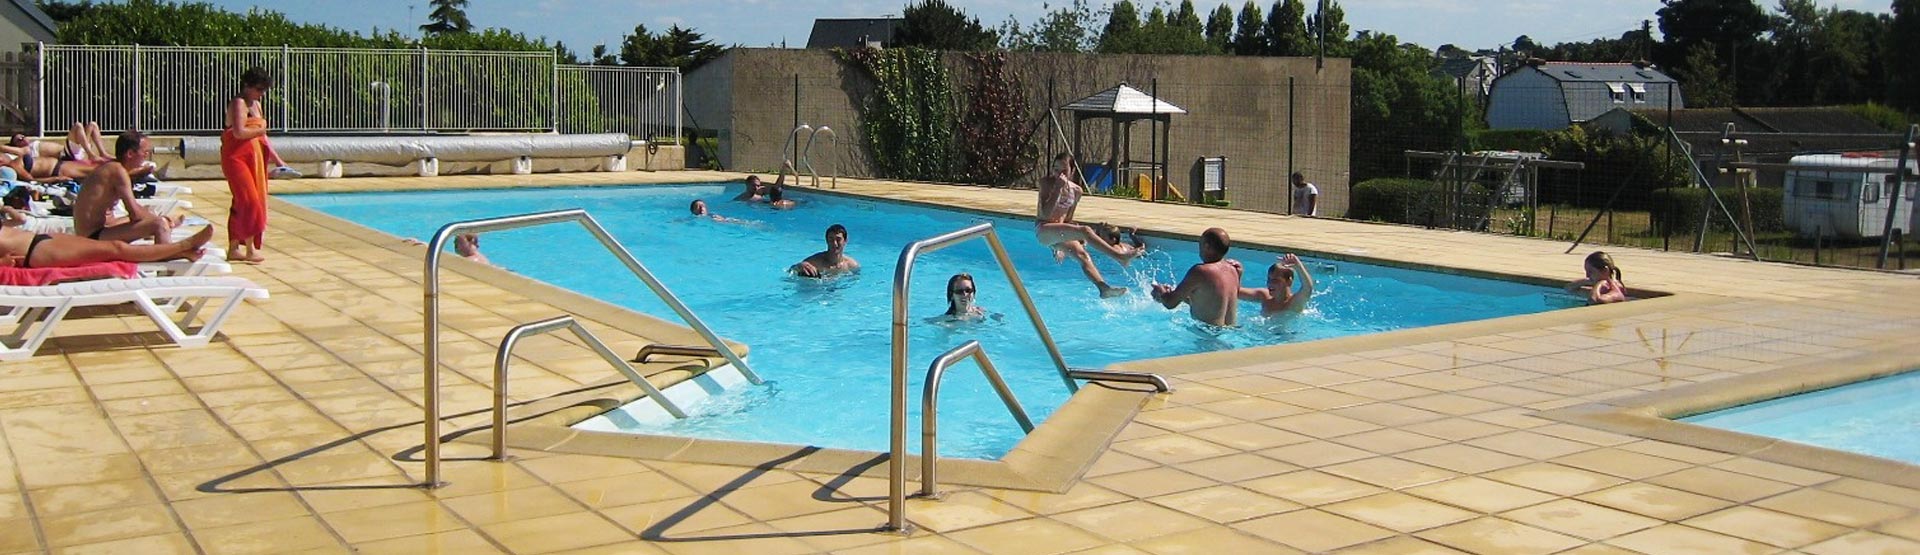 Profitez de notre piscine pendant vos vacances dans notre camping en Bretagne